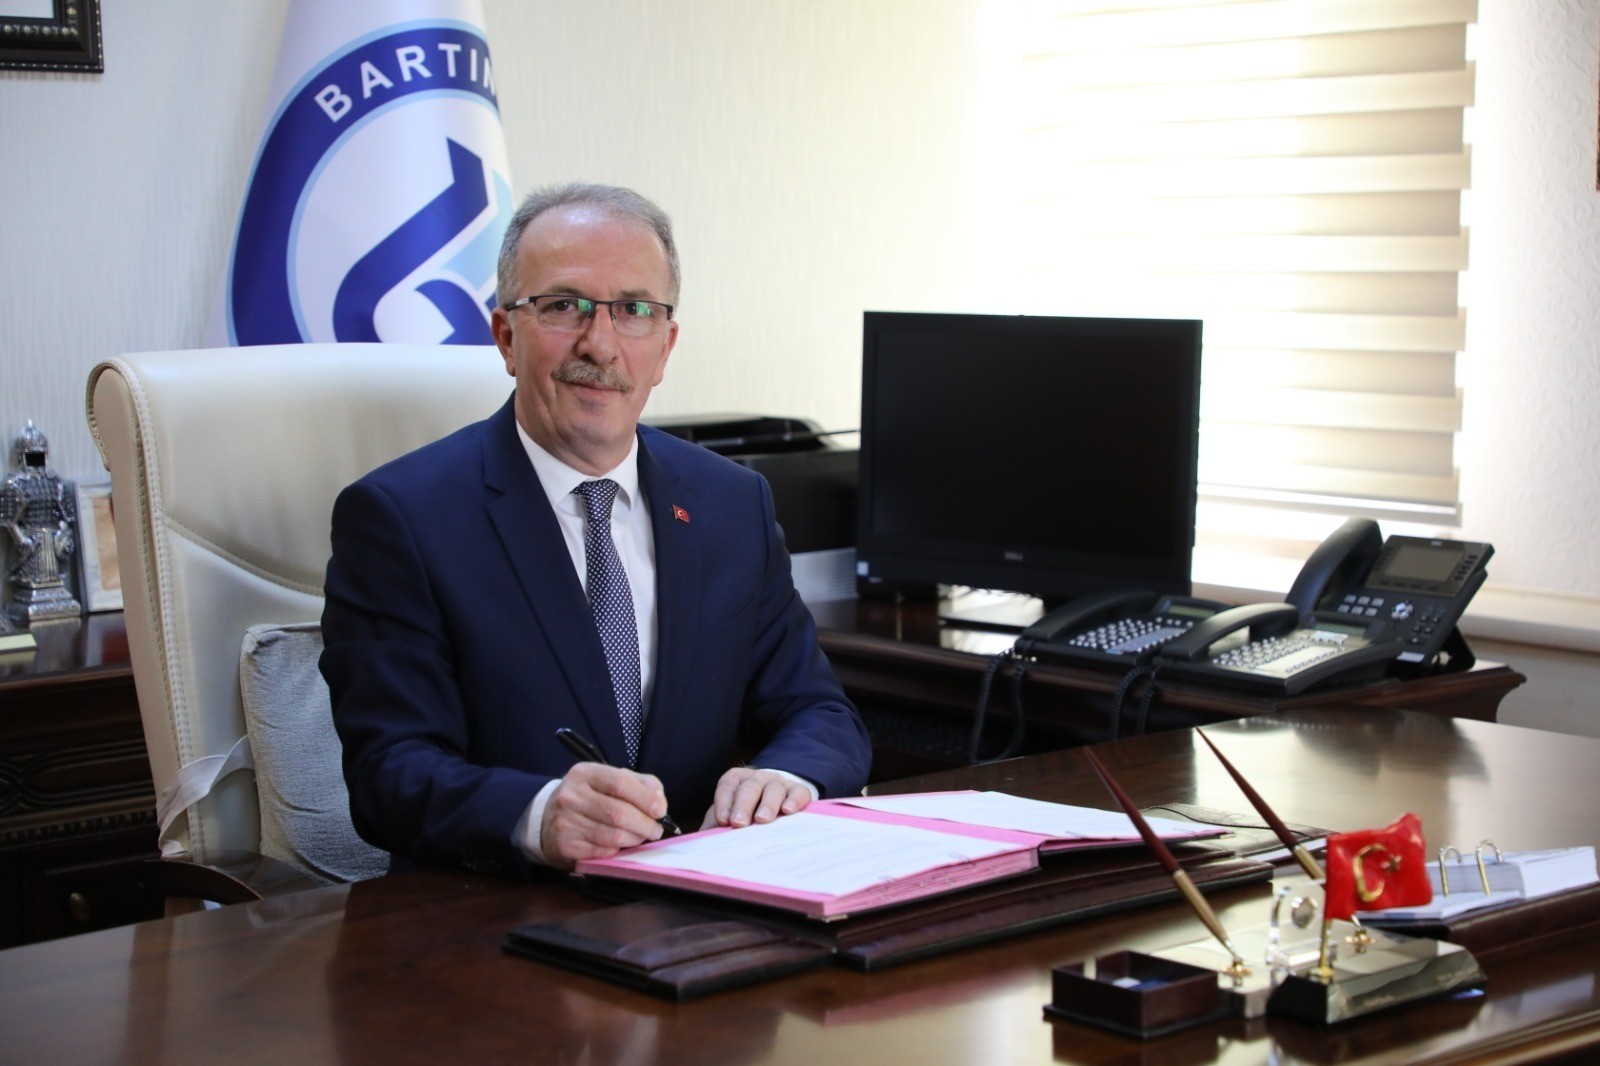 Bartın Üniversitesi ile KARDÖKMAK arasında iş birliği protokolü imzalandı